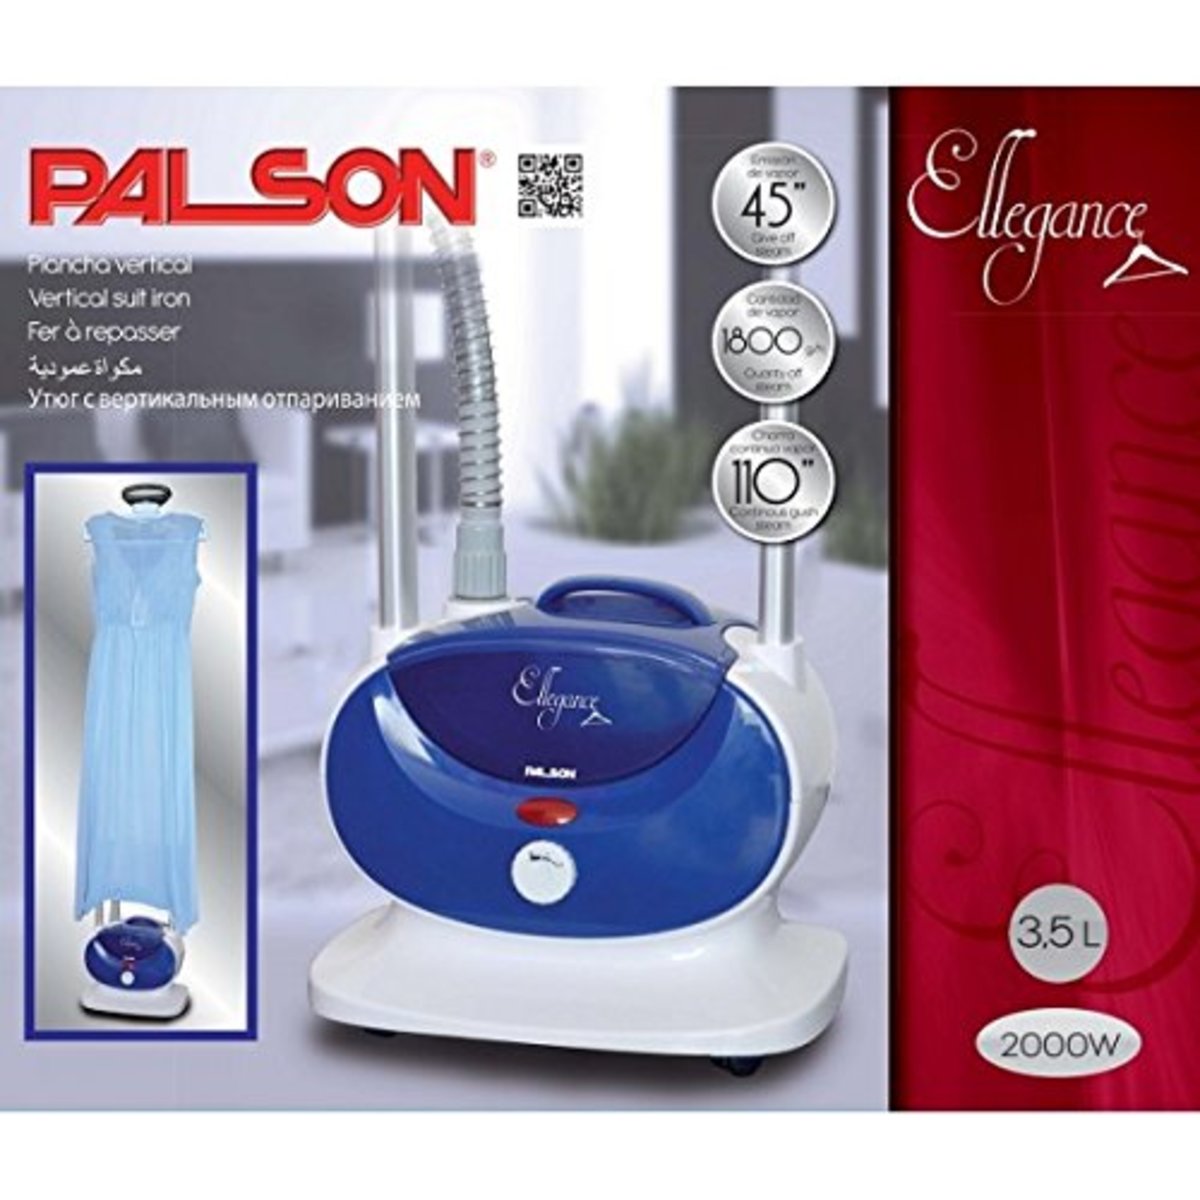 Palson Vertical Garment Steamer 30812